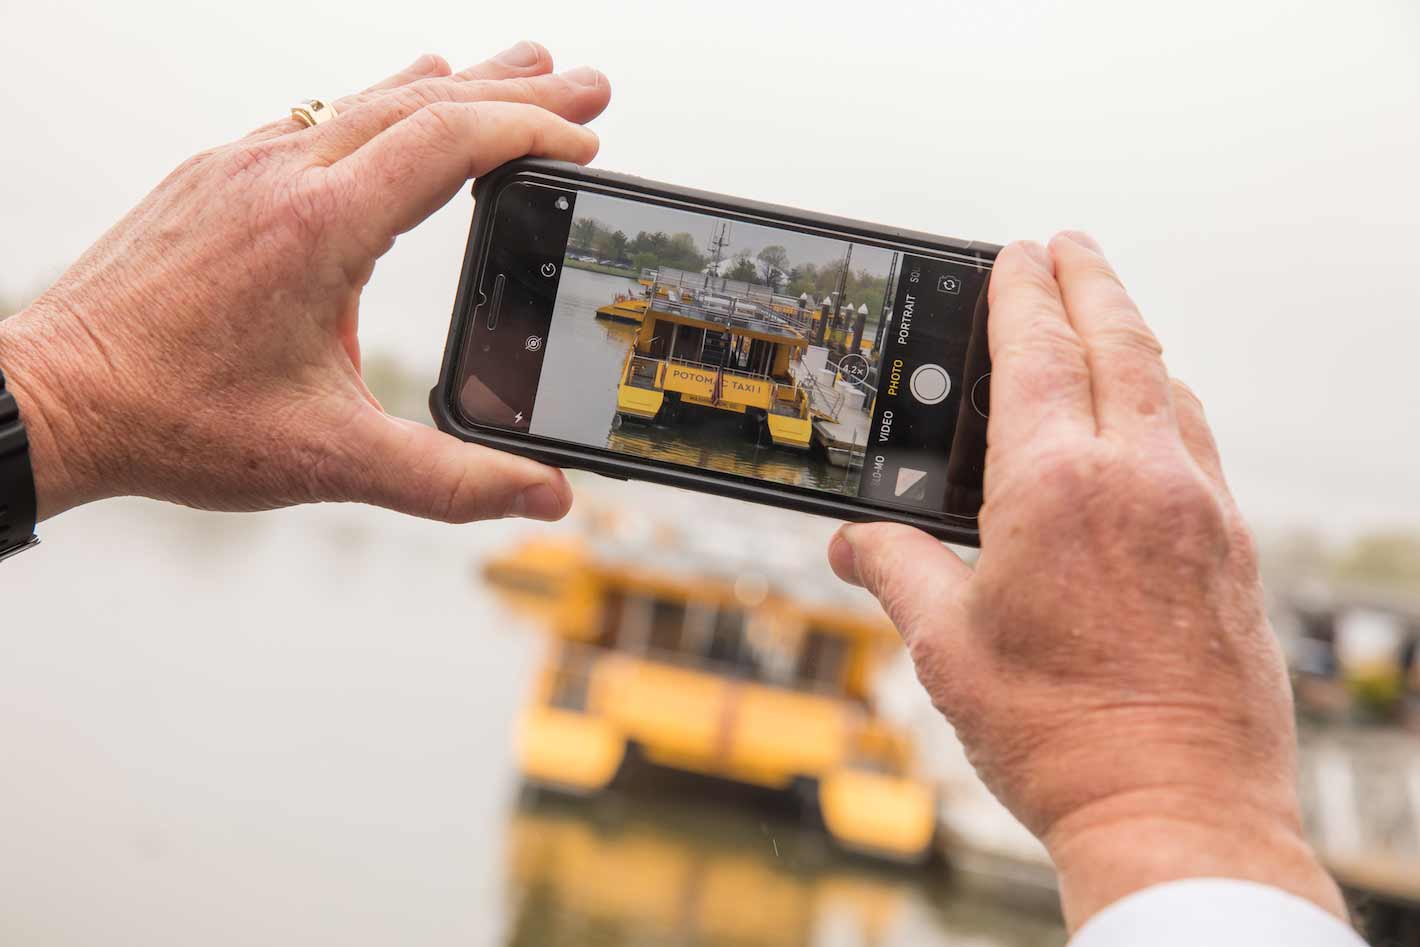 טלפון מצלם תמונה של מונית מים בוושינגטון הבירה.